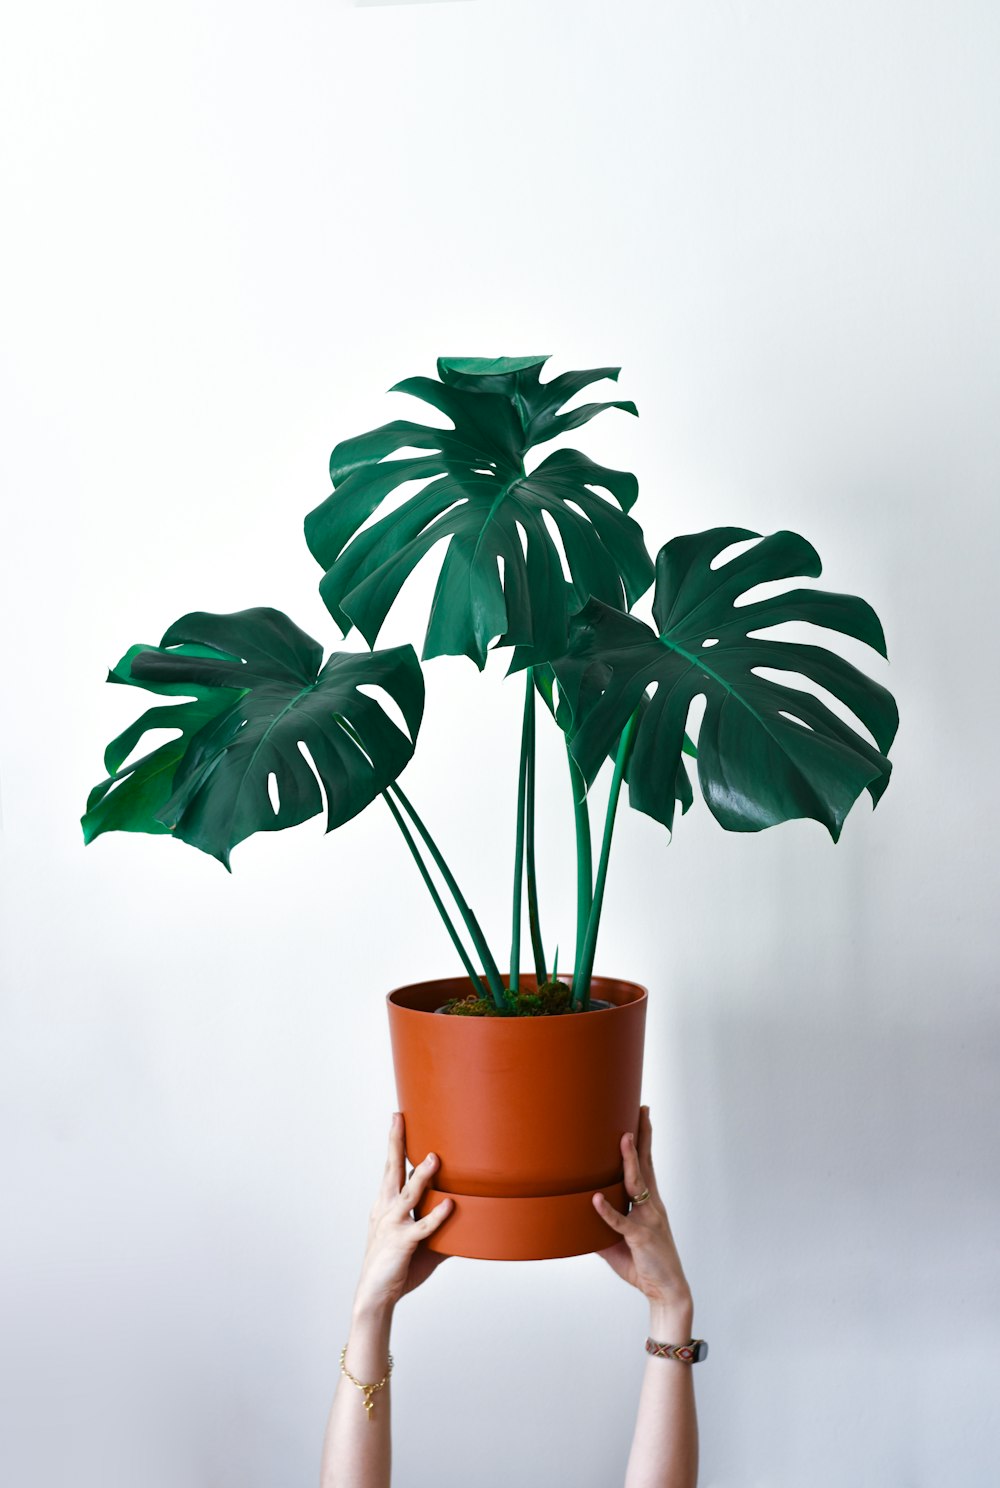 una persona sosteniendo una planta en maceta con grandes hojas verdes